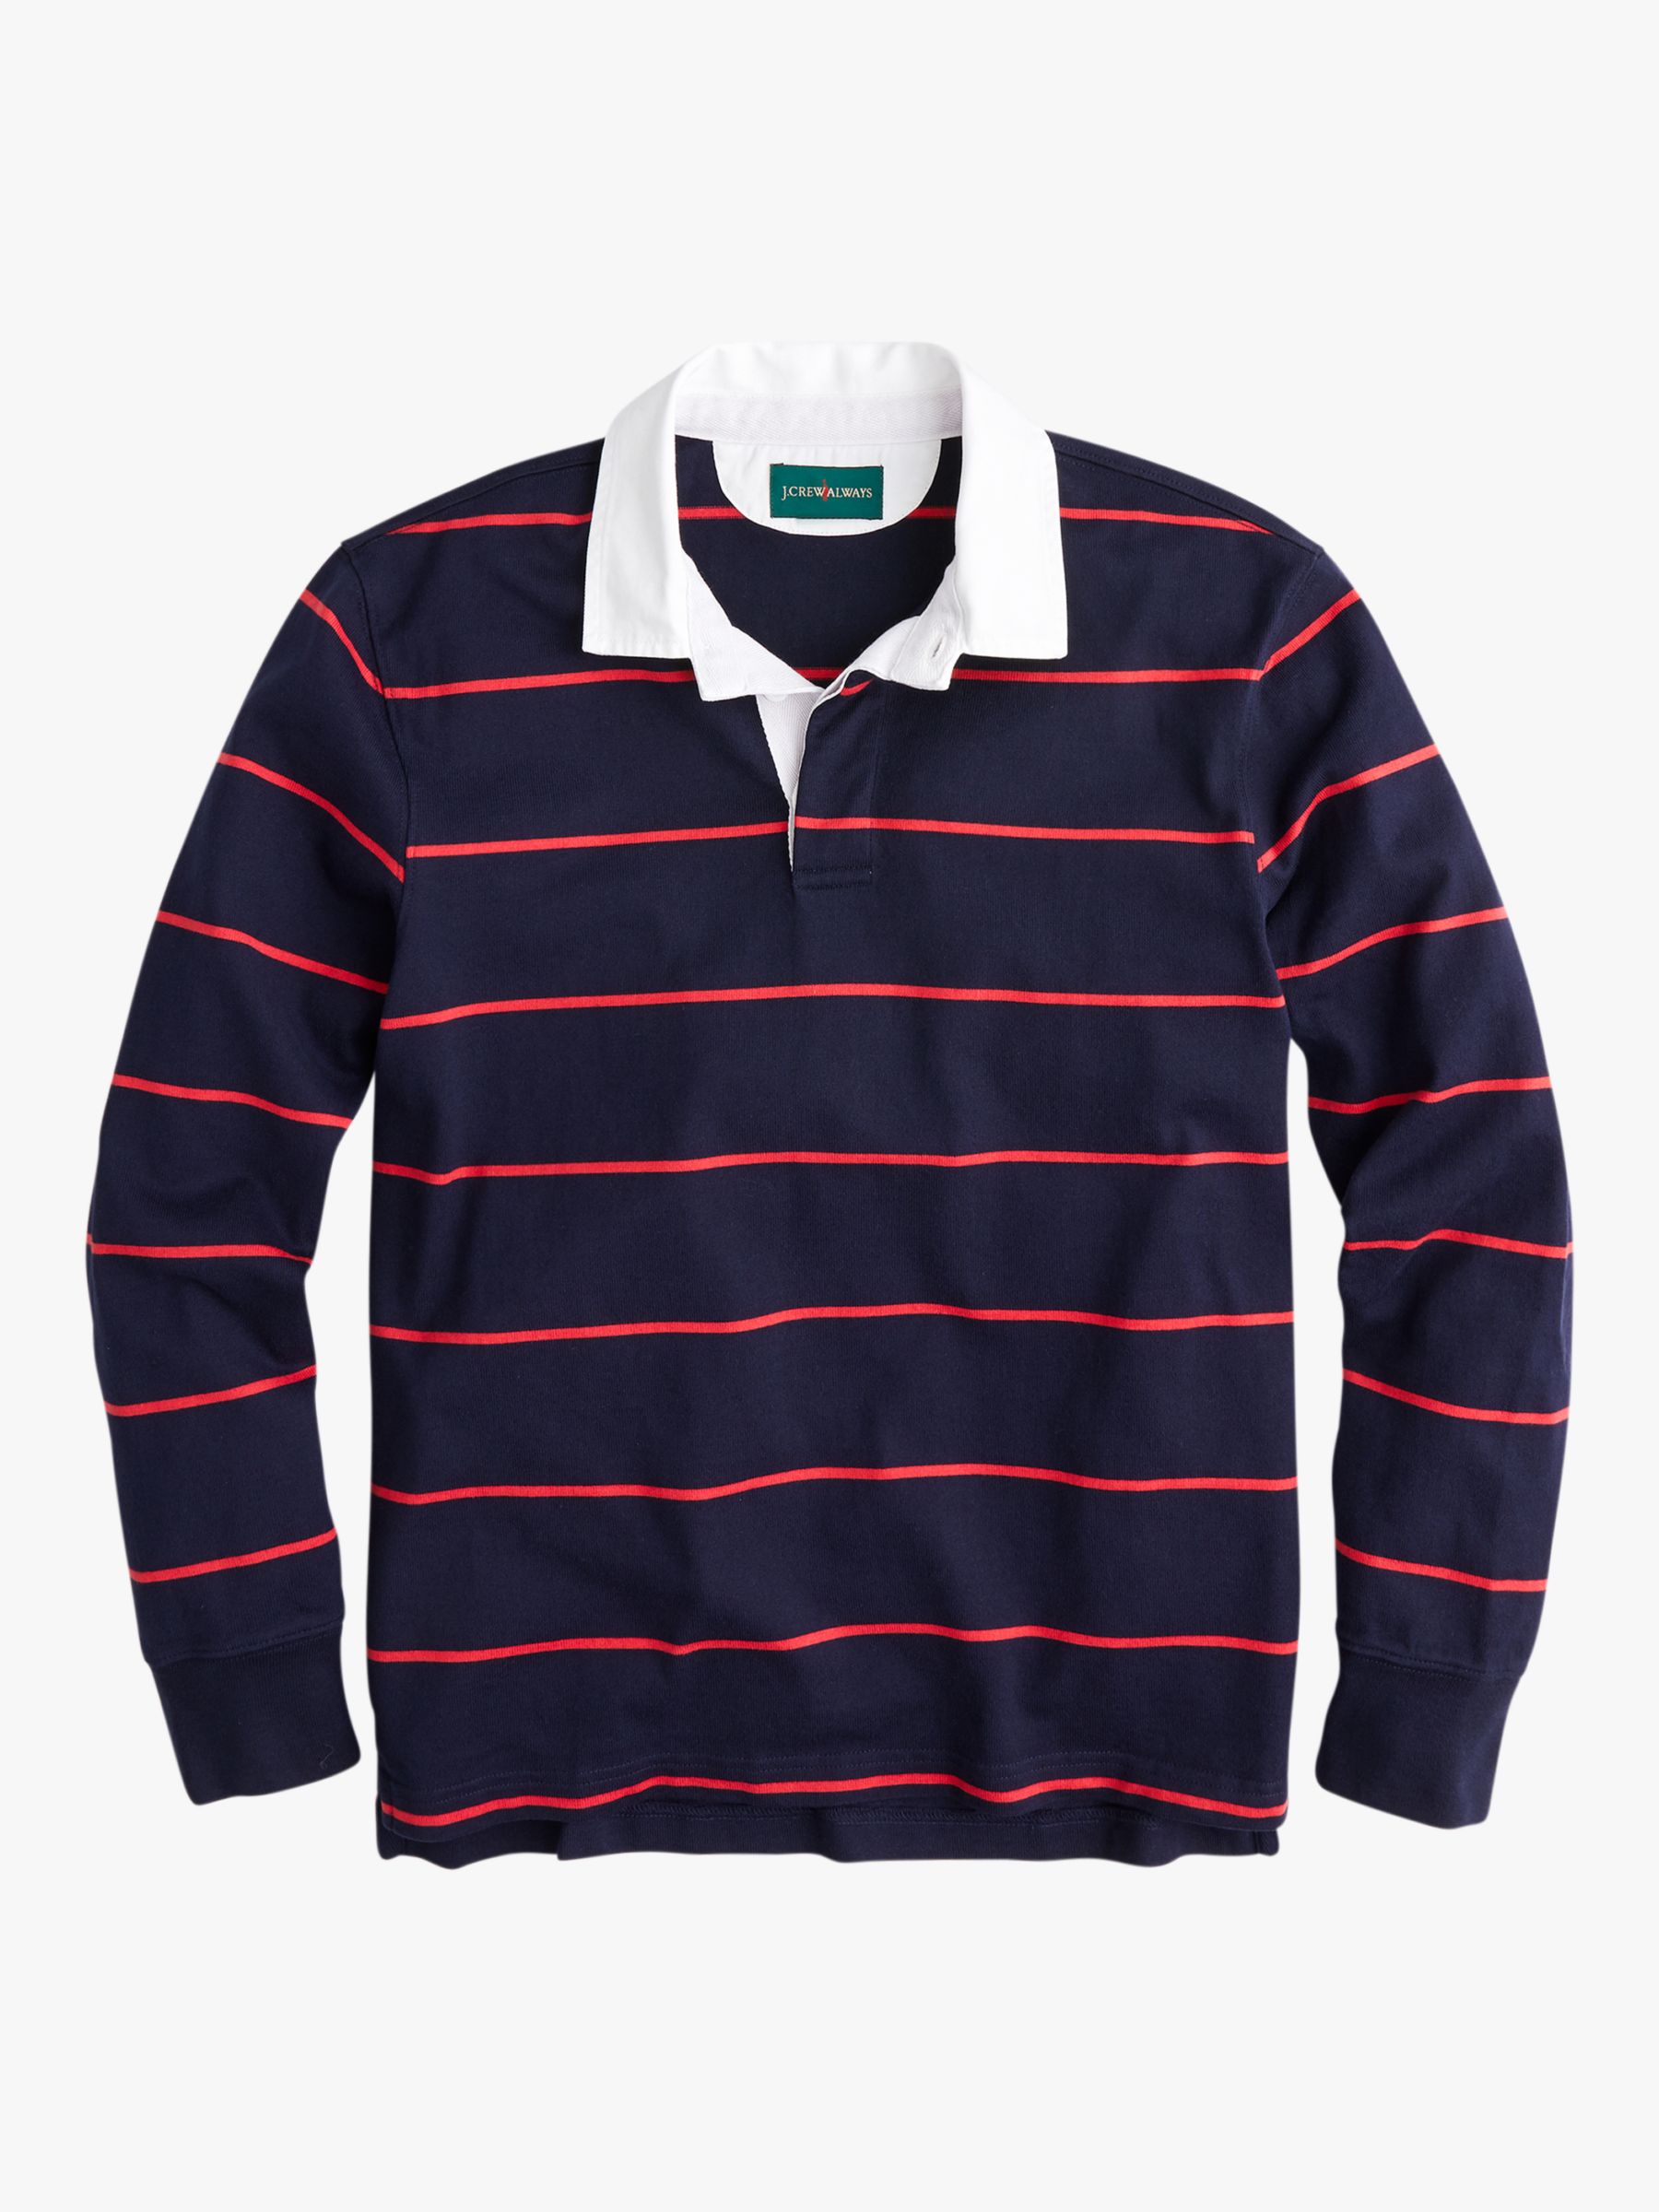 J.Crew 1984 Stripe Rugby Shirt, Dark Navy